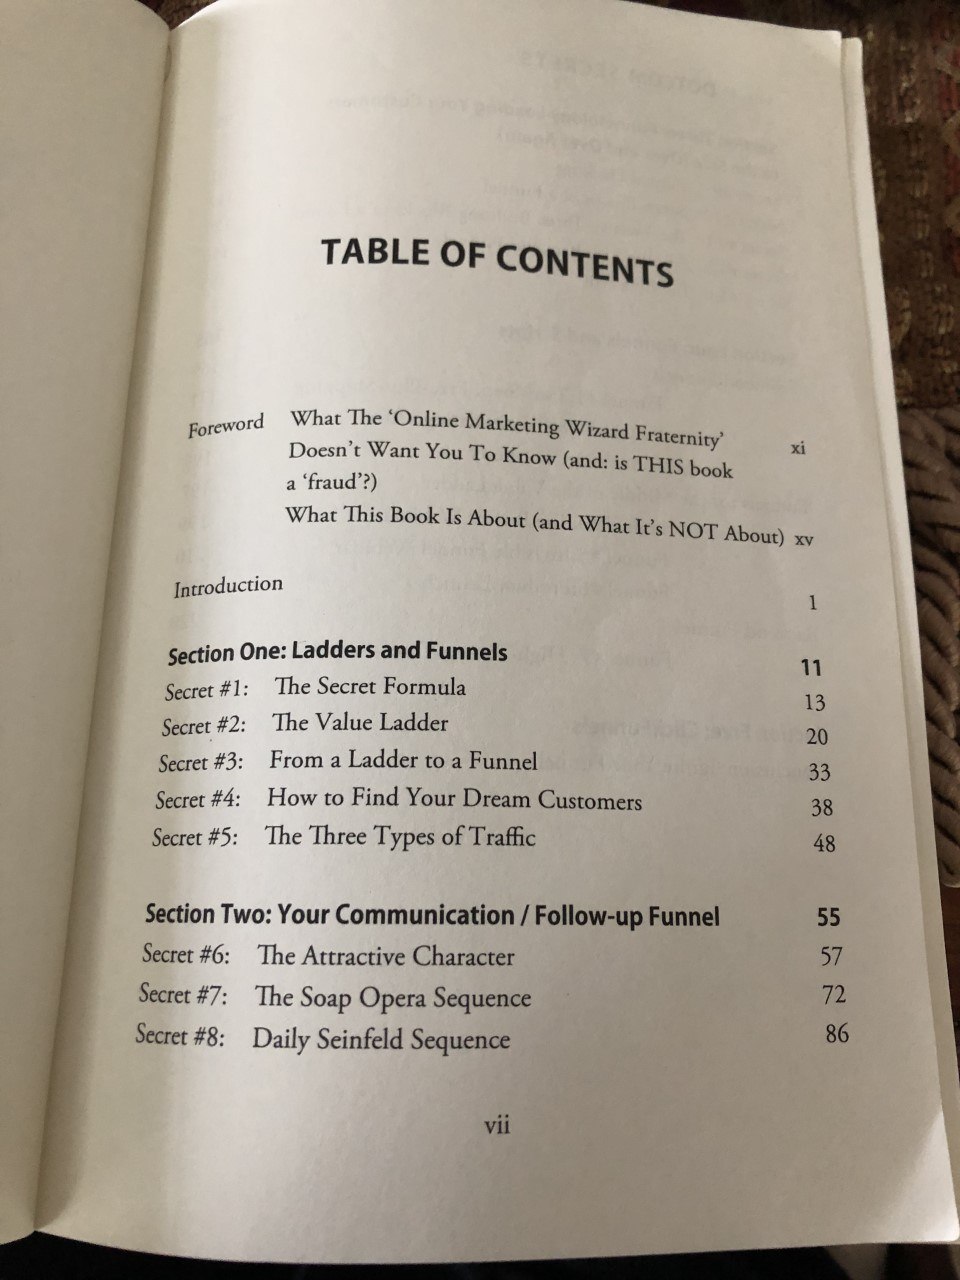 dot com secrets table of contents 1